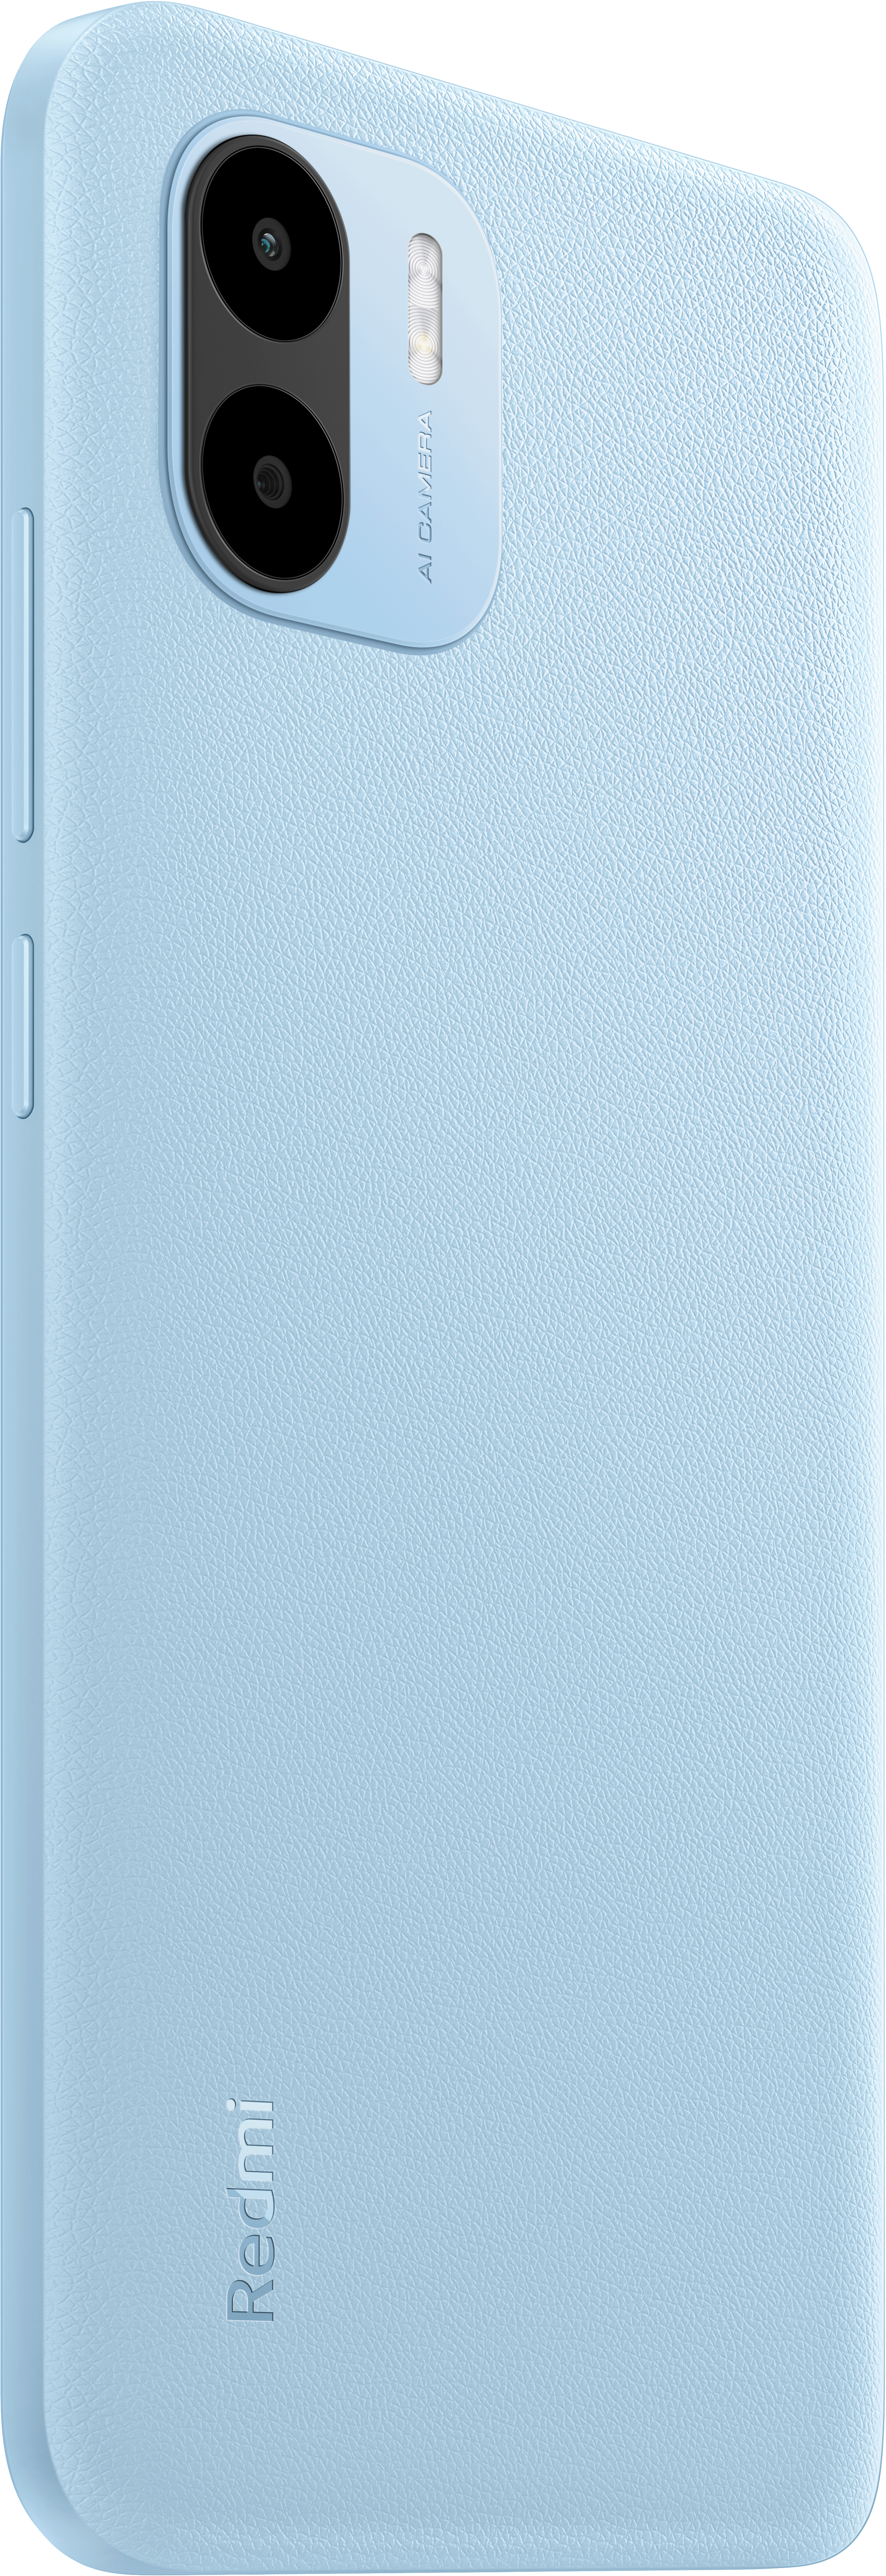 XIAOMI Redmi A2 32 SIM Blue Light Dual GB